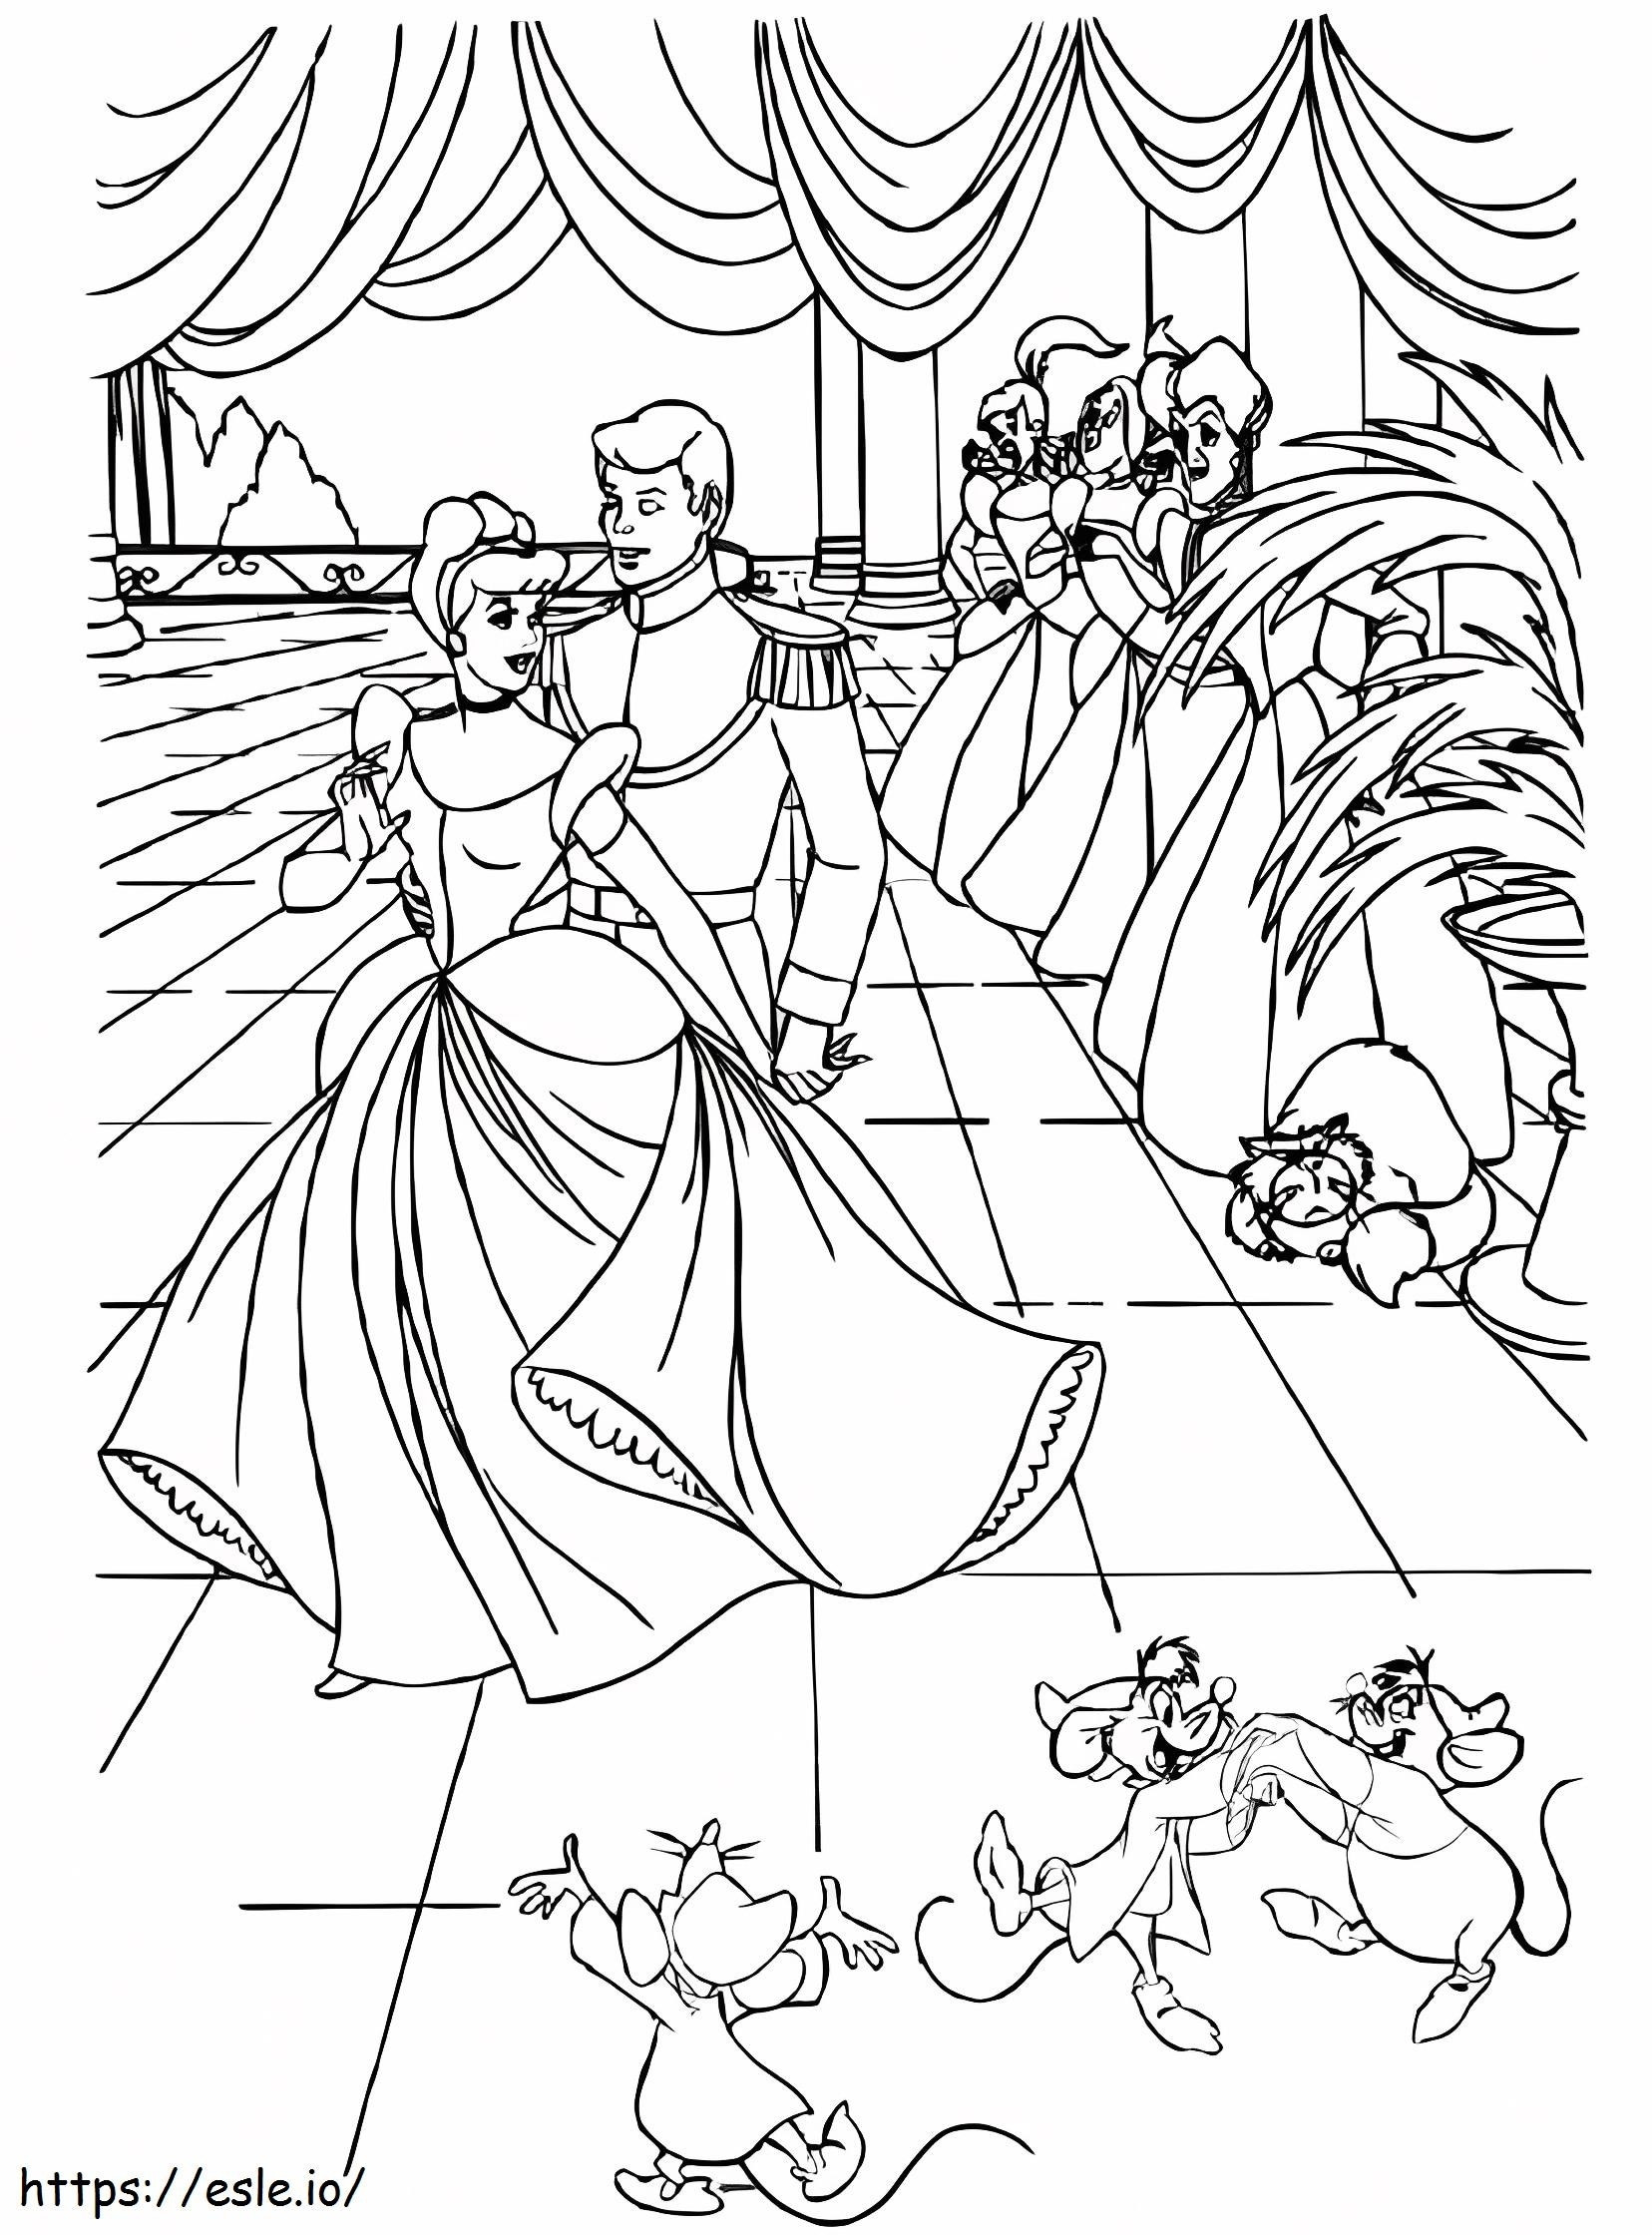 Cinderela e o príncipe no baile para colorir